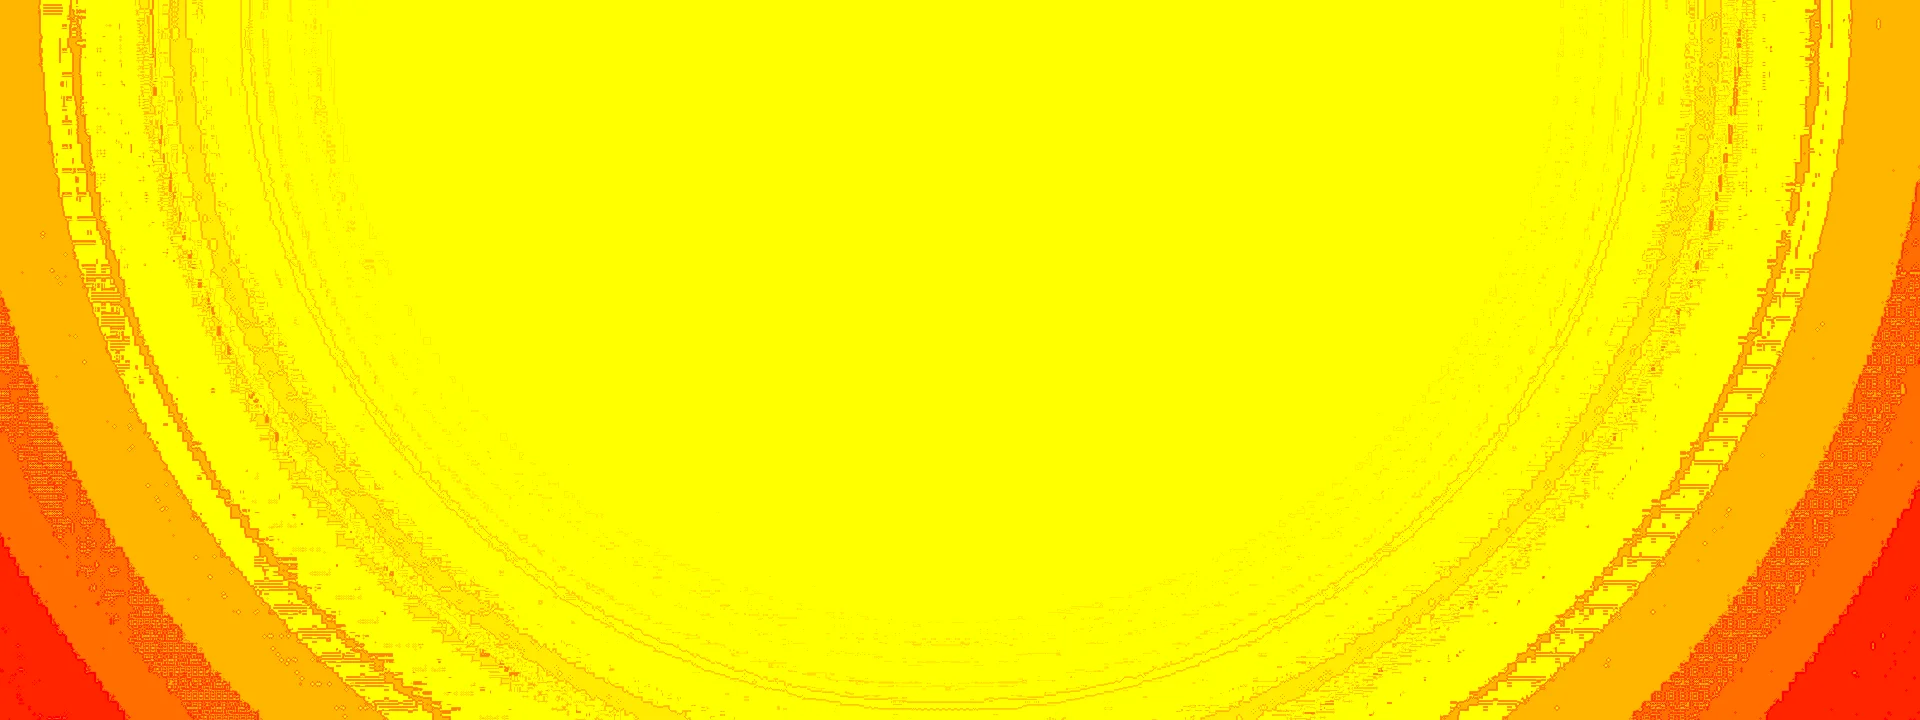 Приятный желтый фон